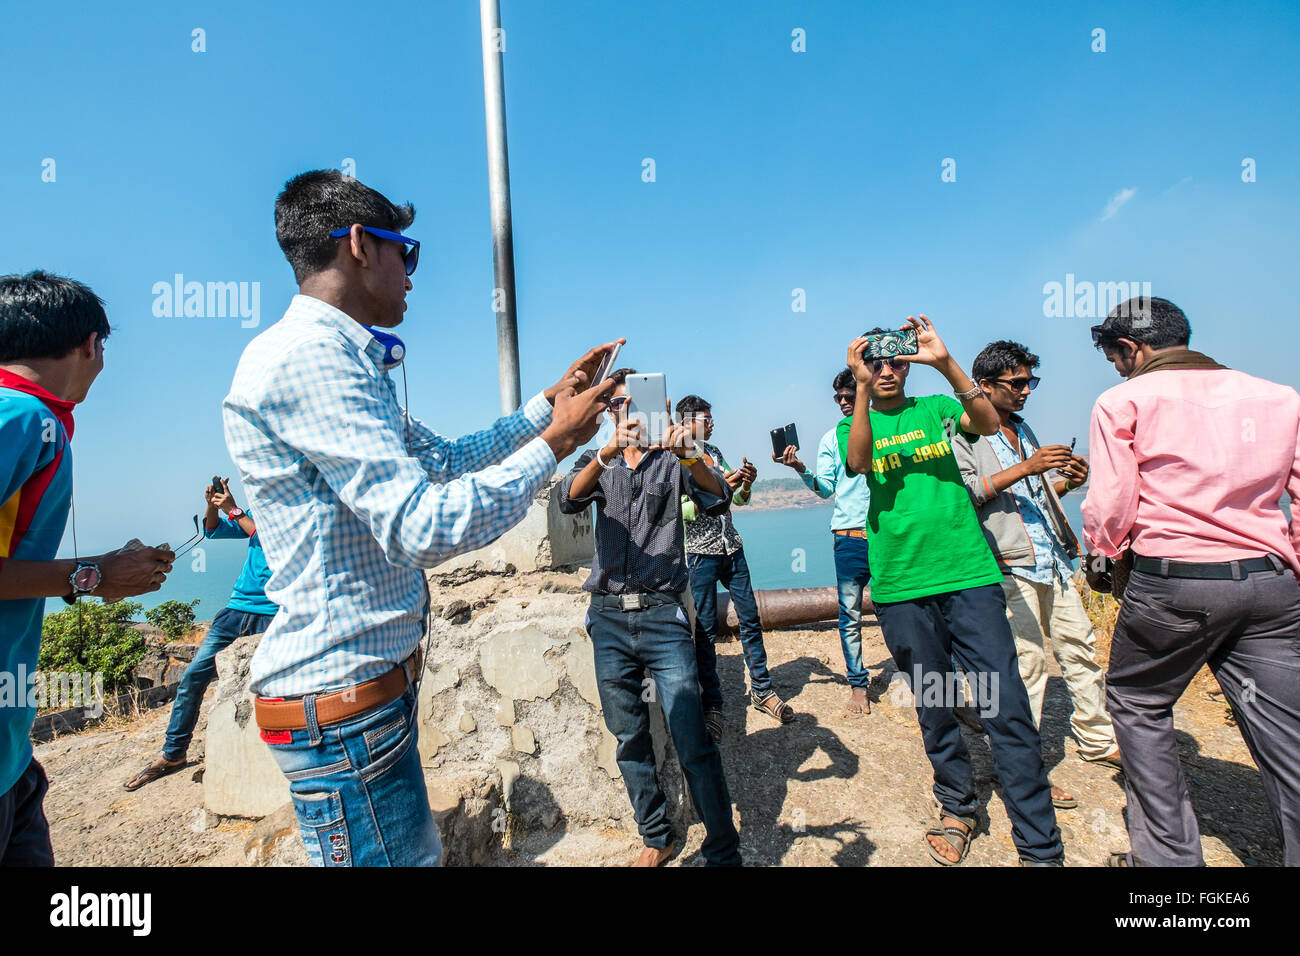 Junge Inder Aufnehmen von Bildern mit ihren Handys Stockfoto